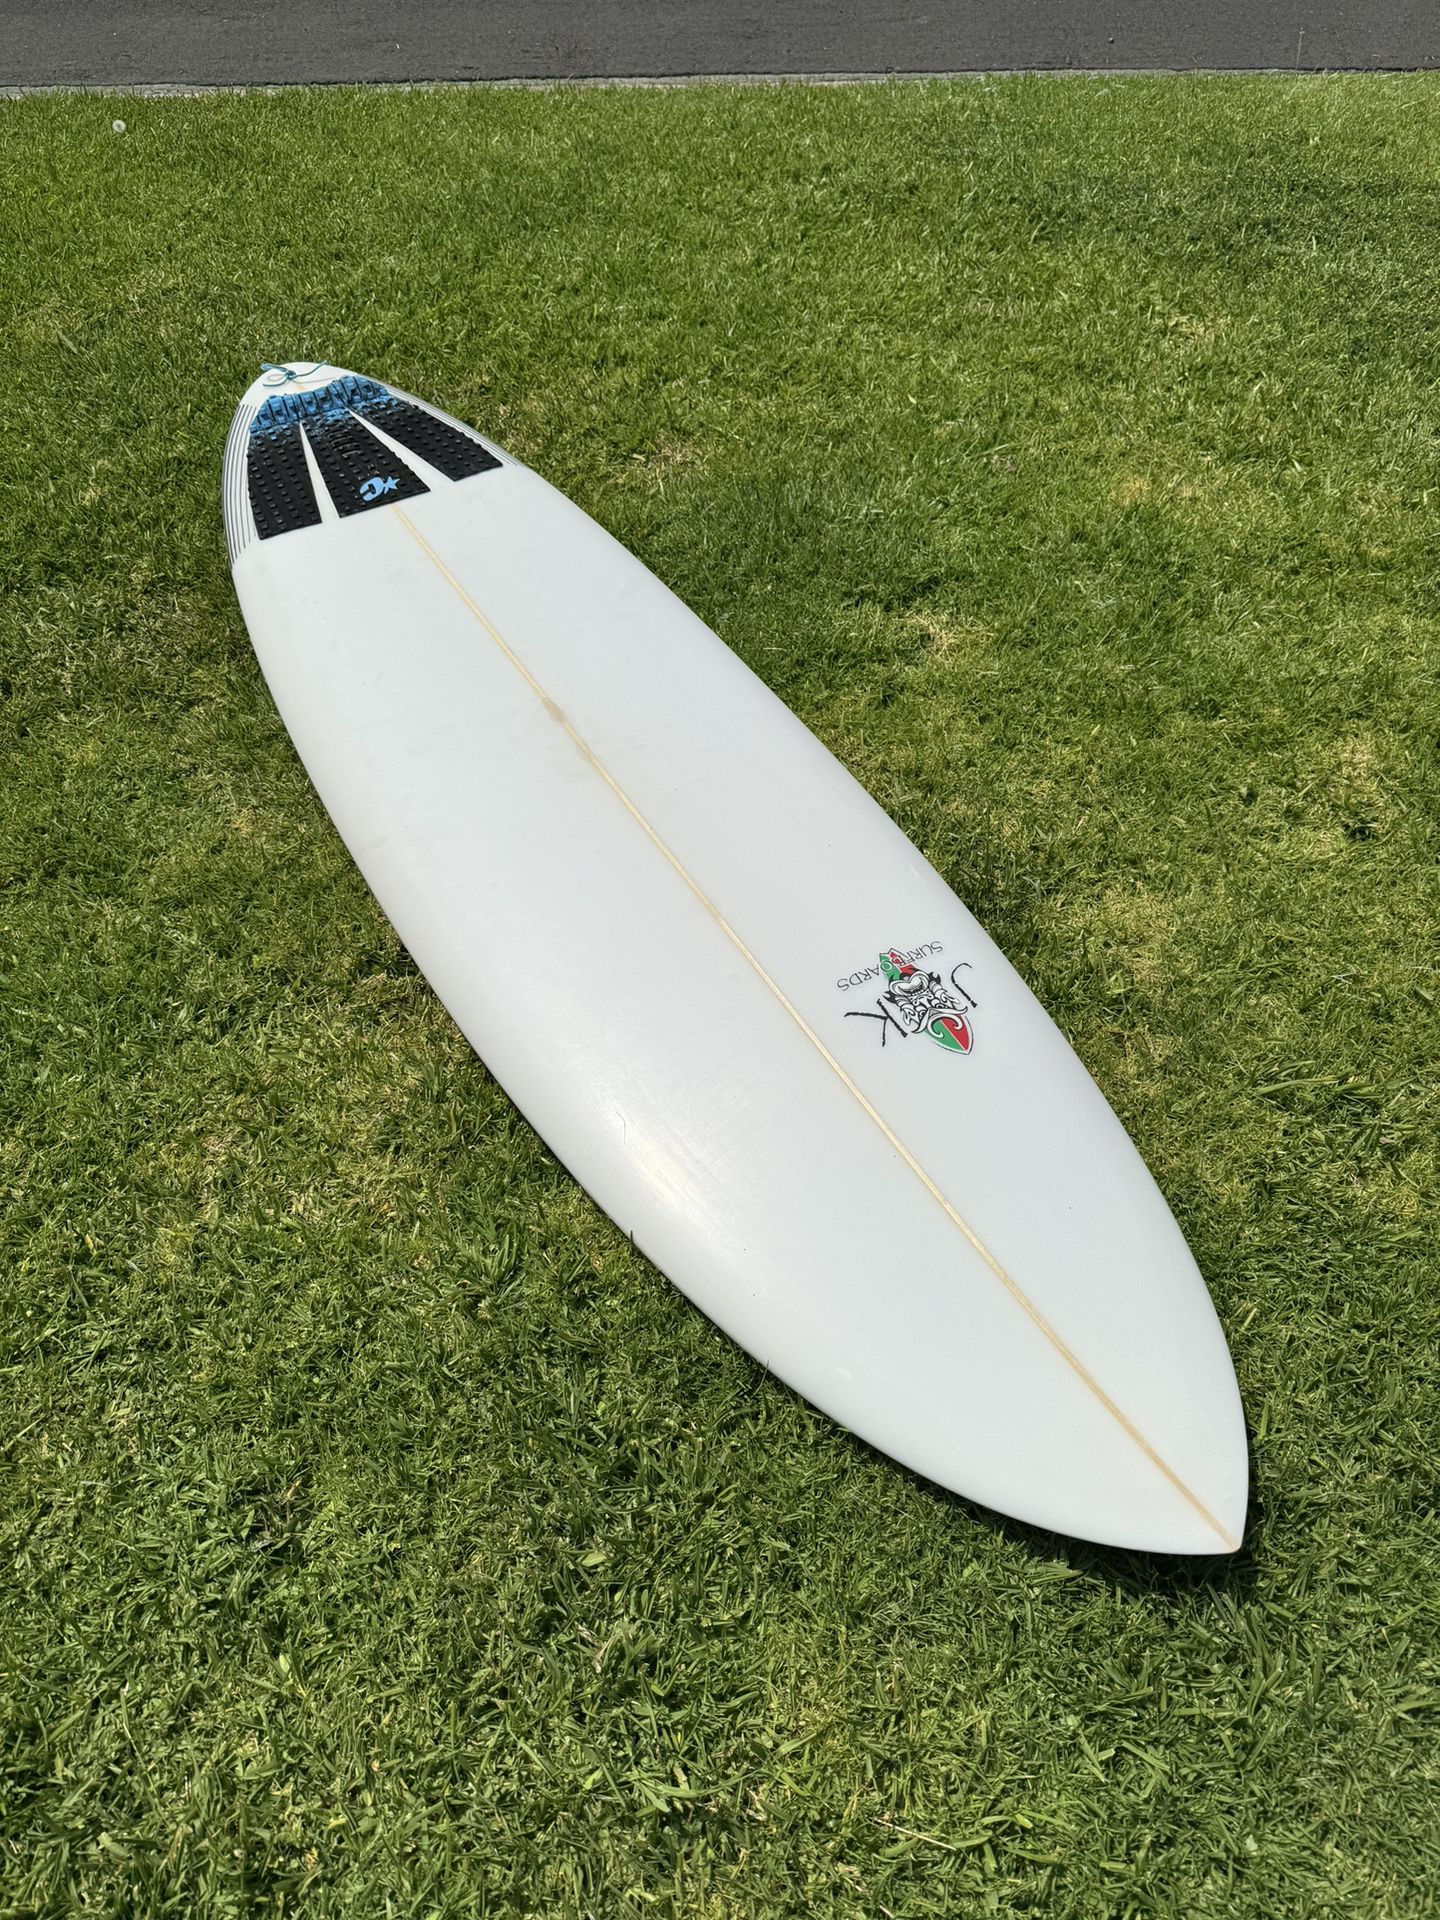 JK 6’8” Surfboard